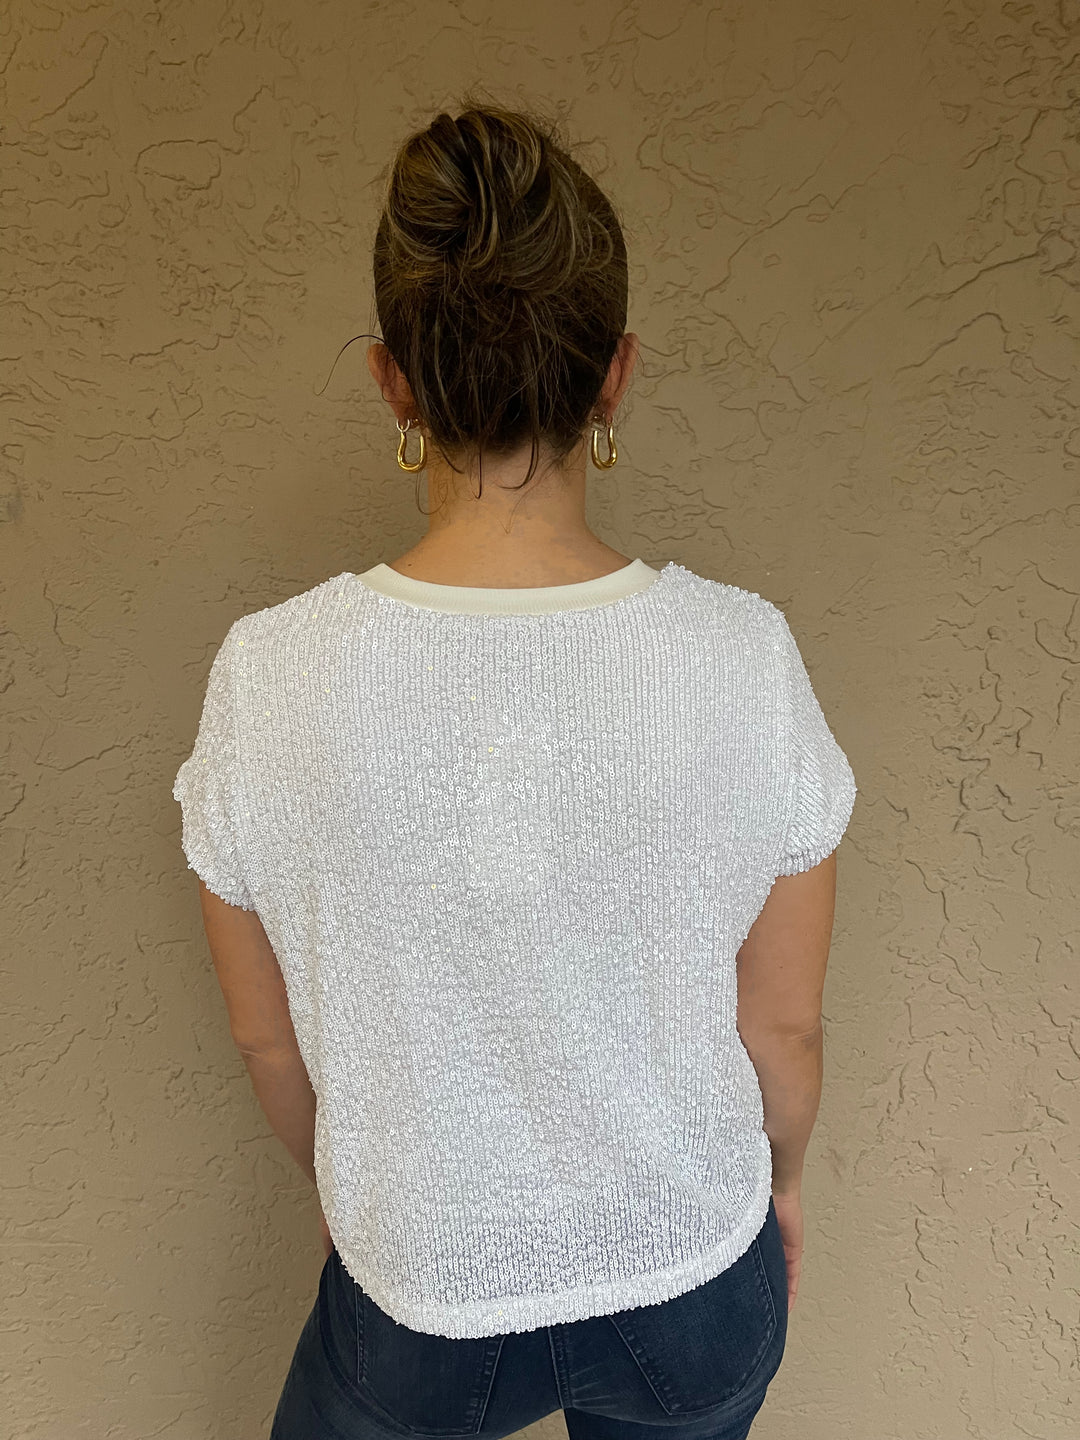 Elliot Lauren Sequin Knit Top - White